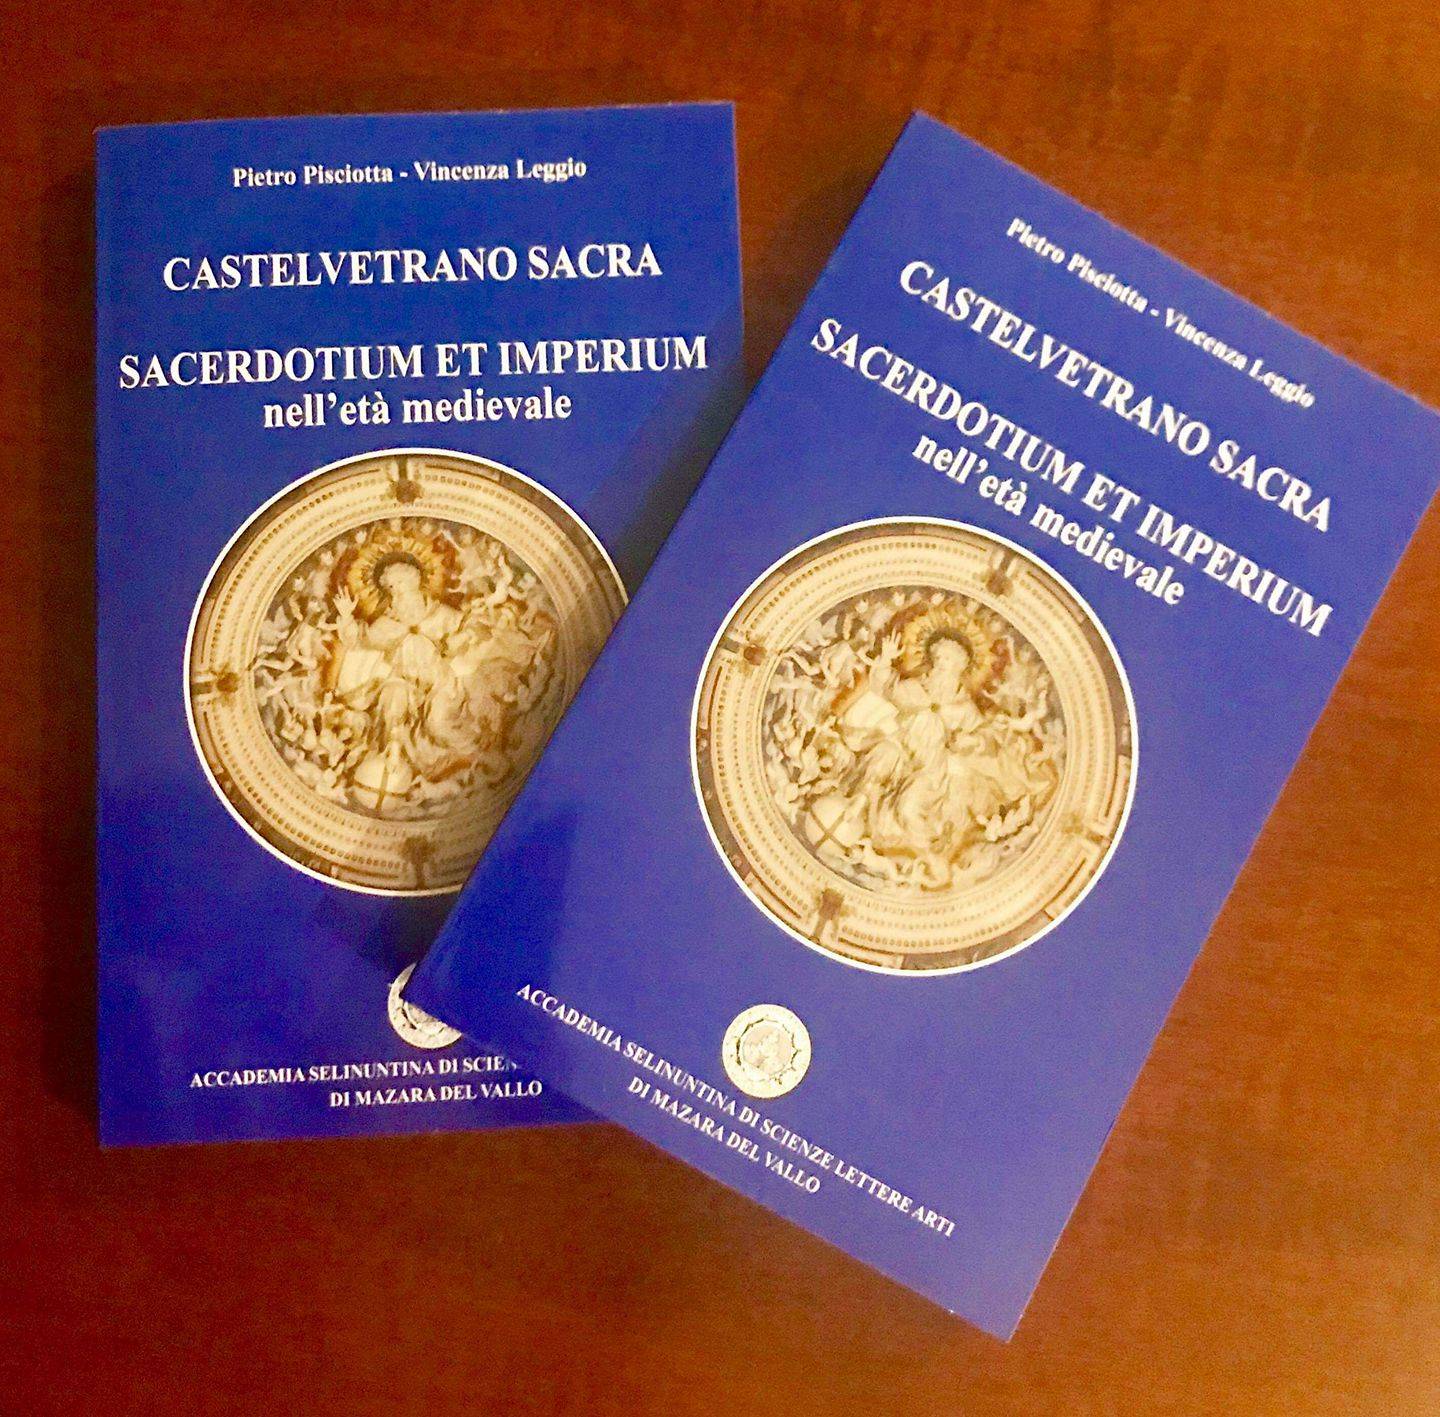 A breve sarà disponibile il nuovo volume dal titolo “CASTELVETRANO SACRA”